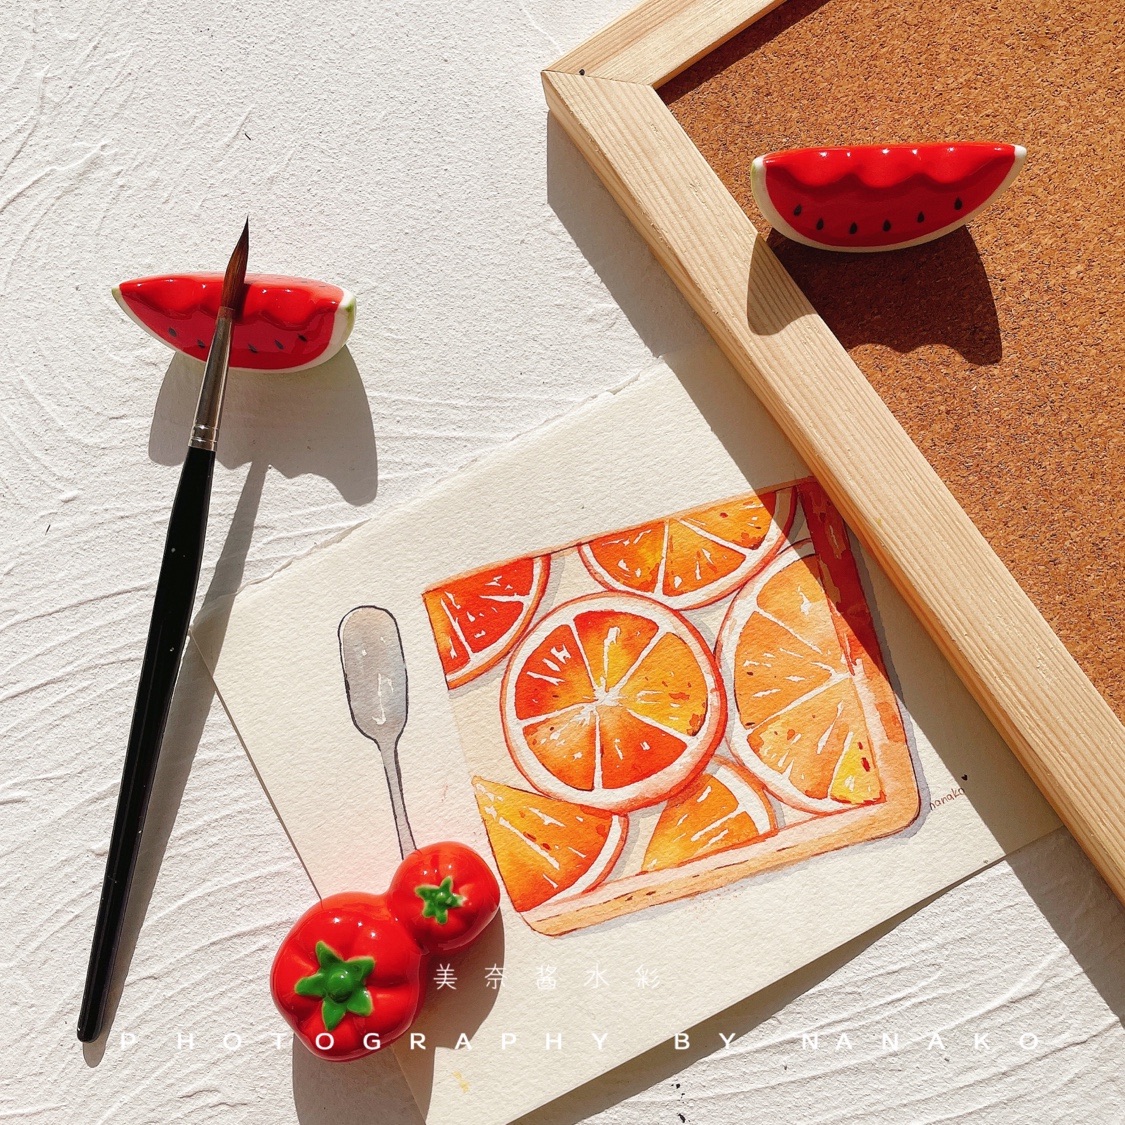 西瓜笔架 水果陶瓷笔搁 番茄筷子架夏天的味道 古风国画拍照道具